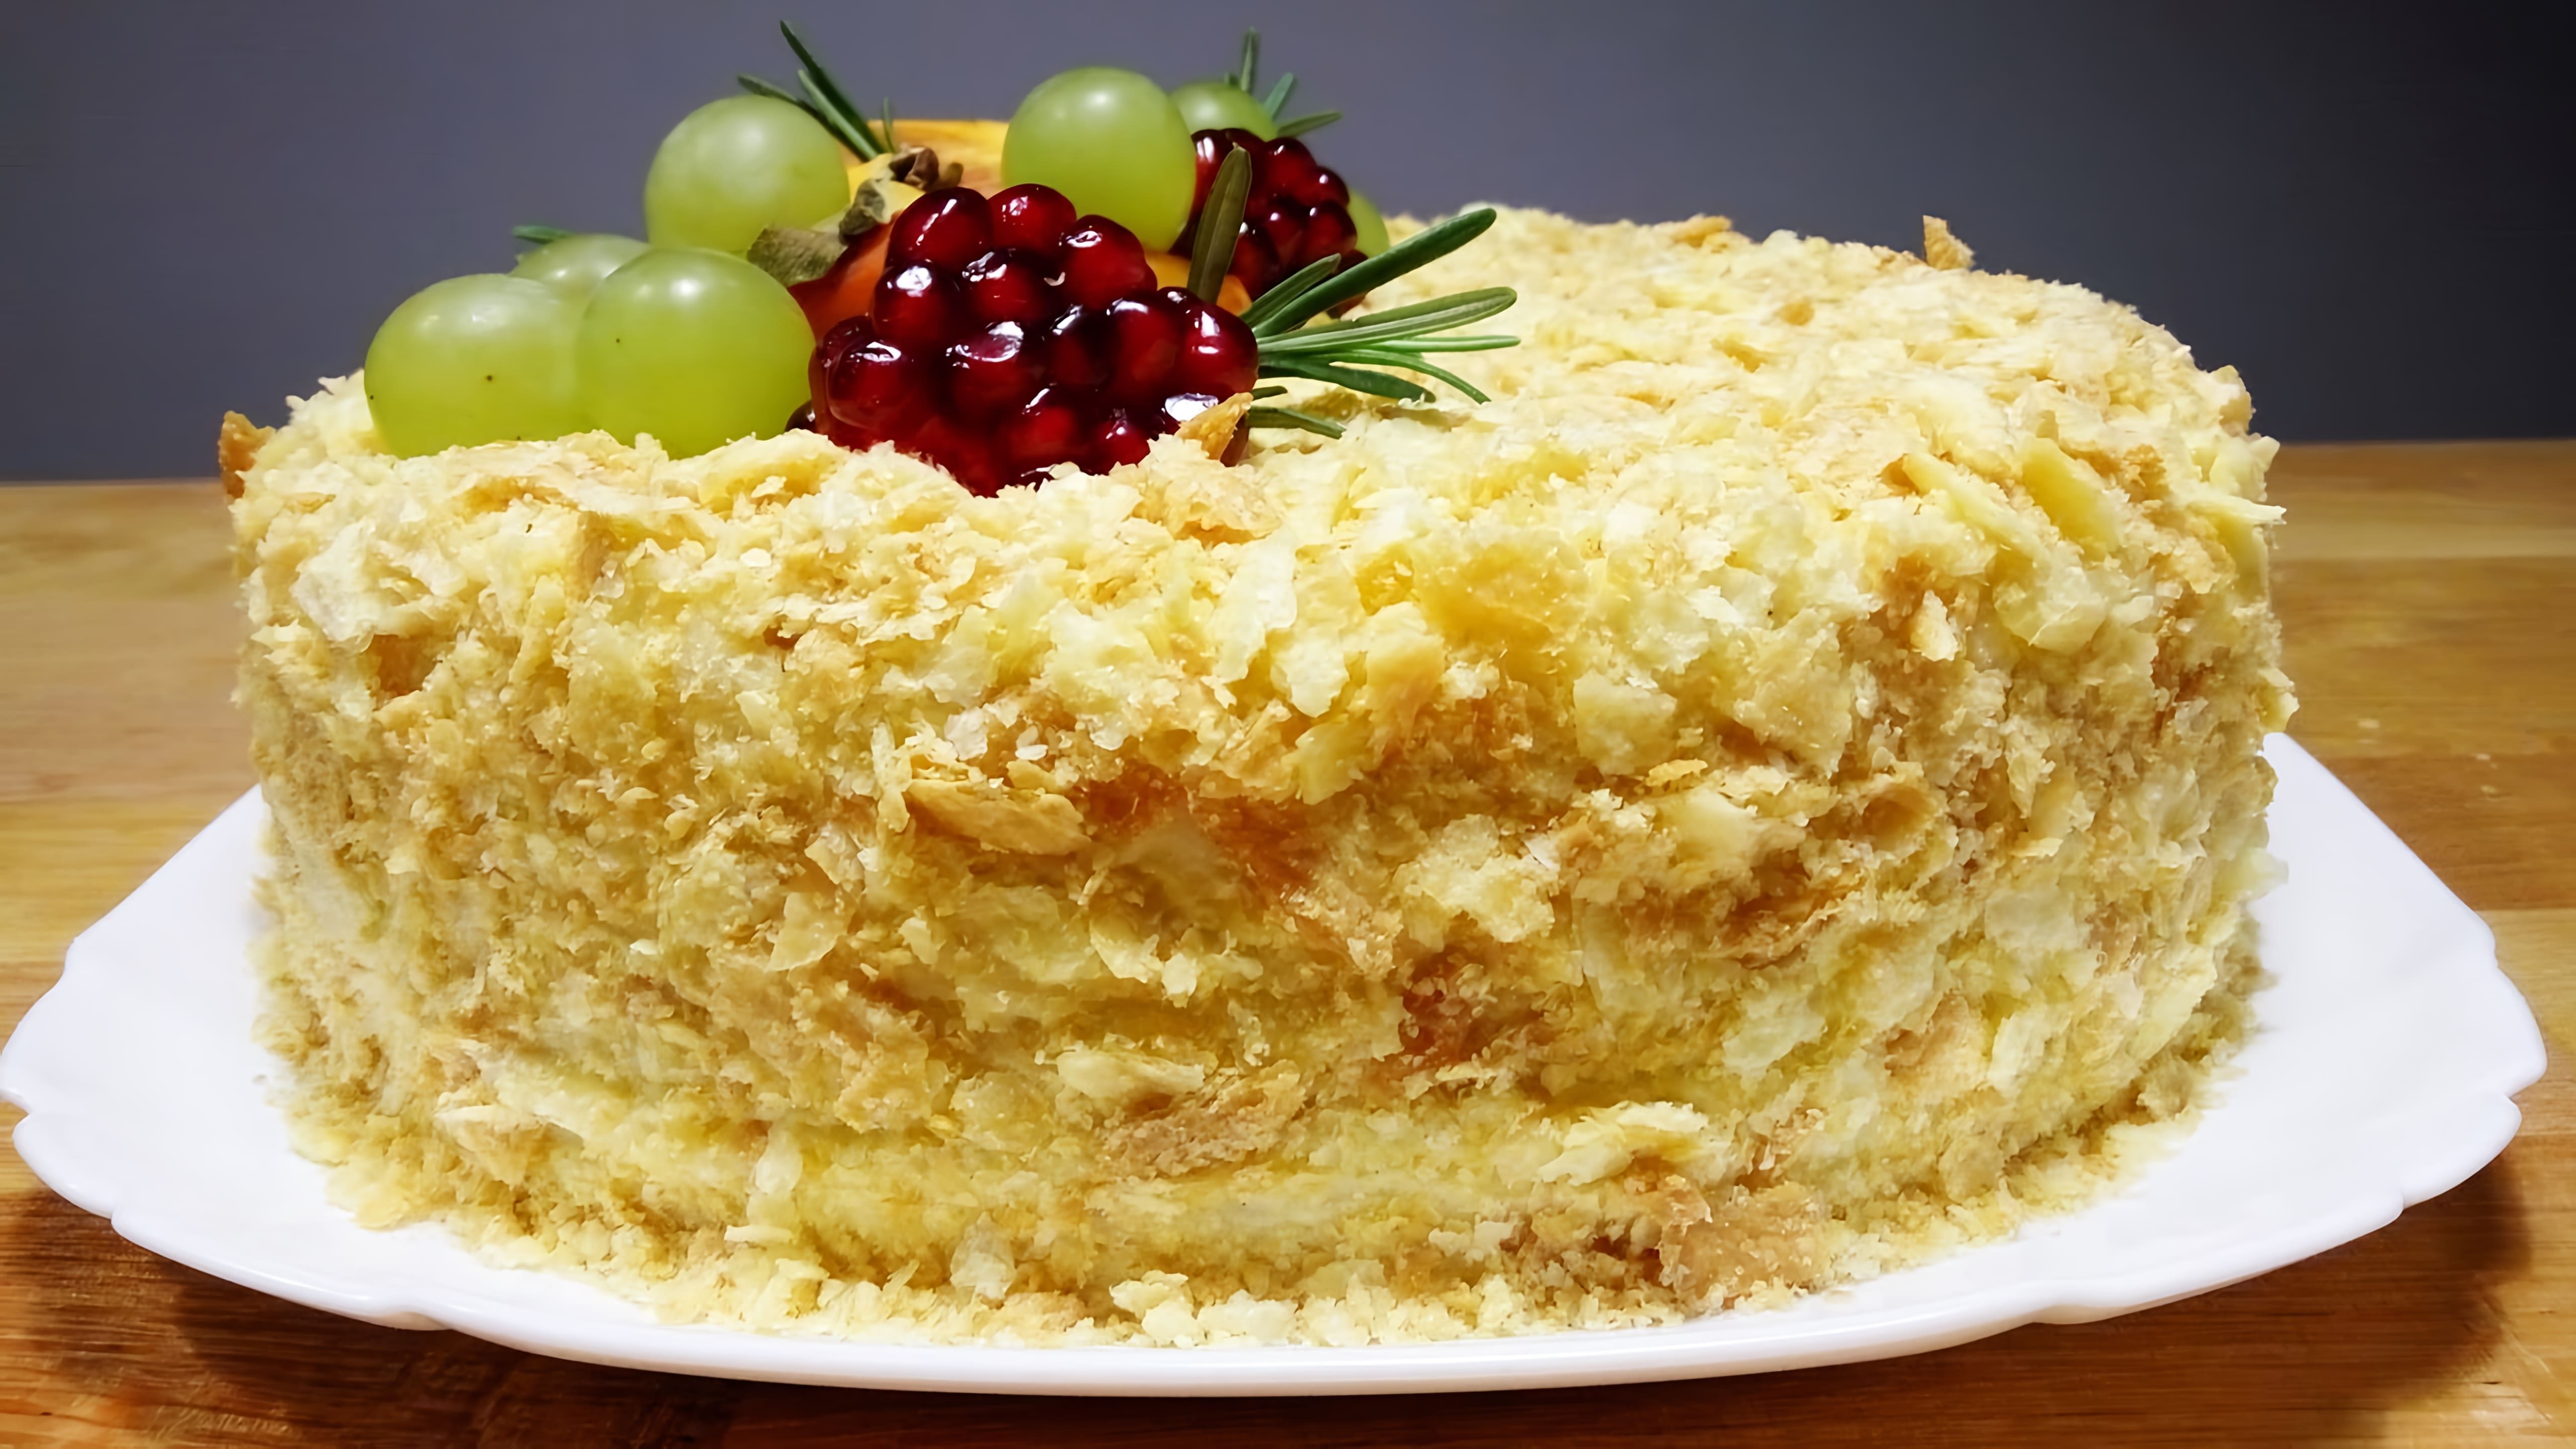 В этом видео демонстрируется процесс приготовления торта "Наполеон" с ванильным кремом